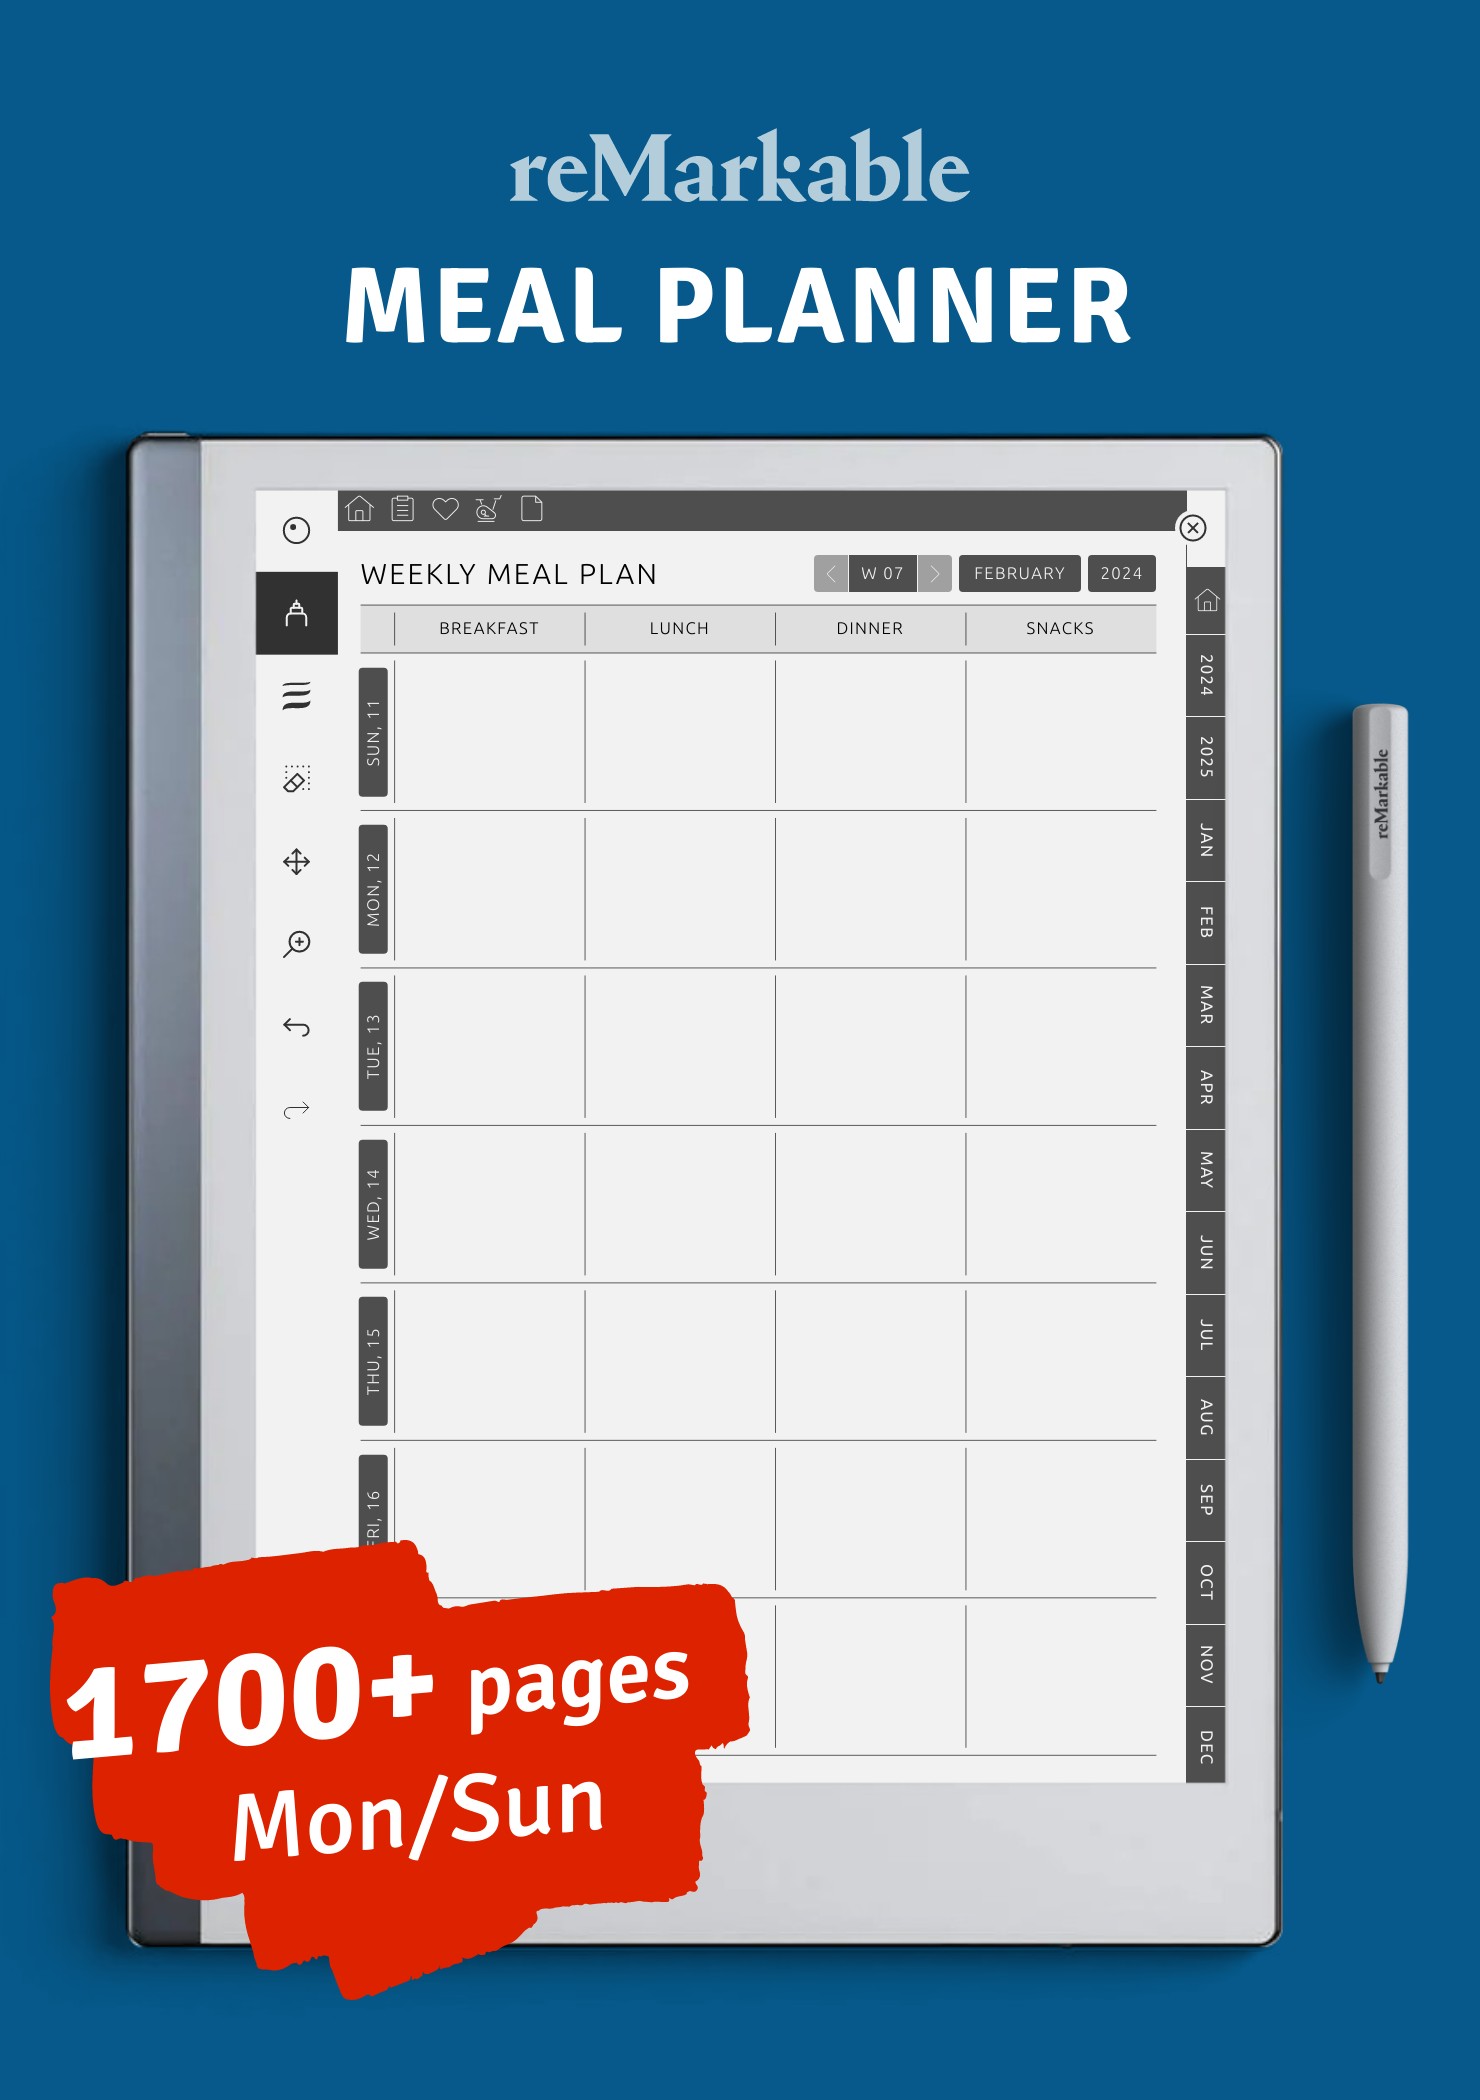 Download Meal Planner PDF for reMarkable 2 1